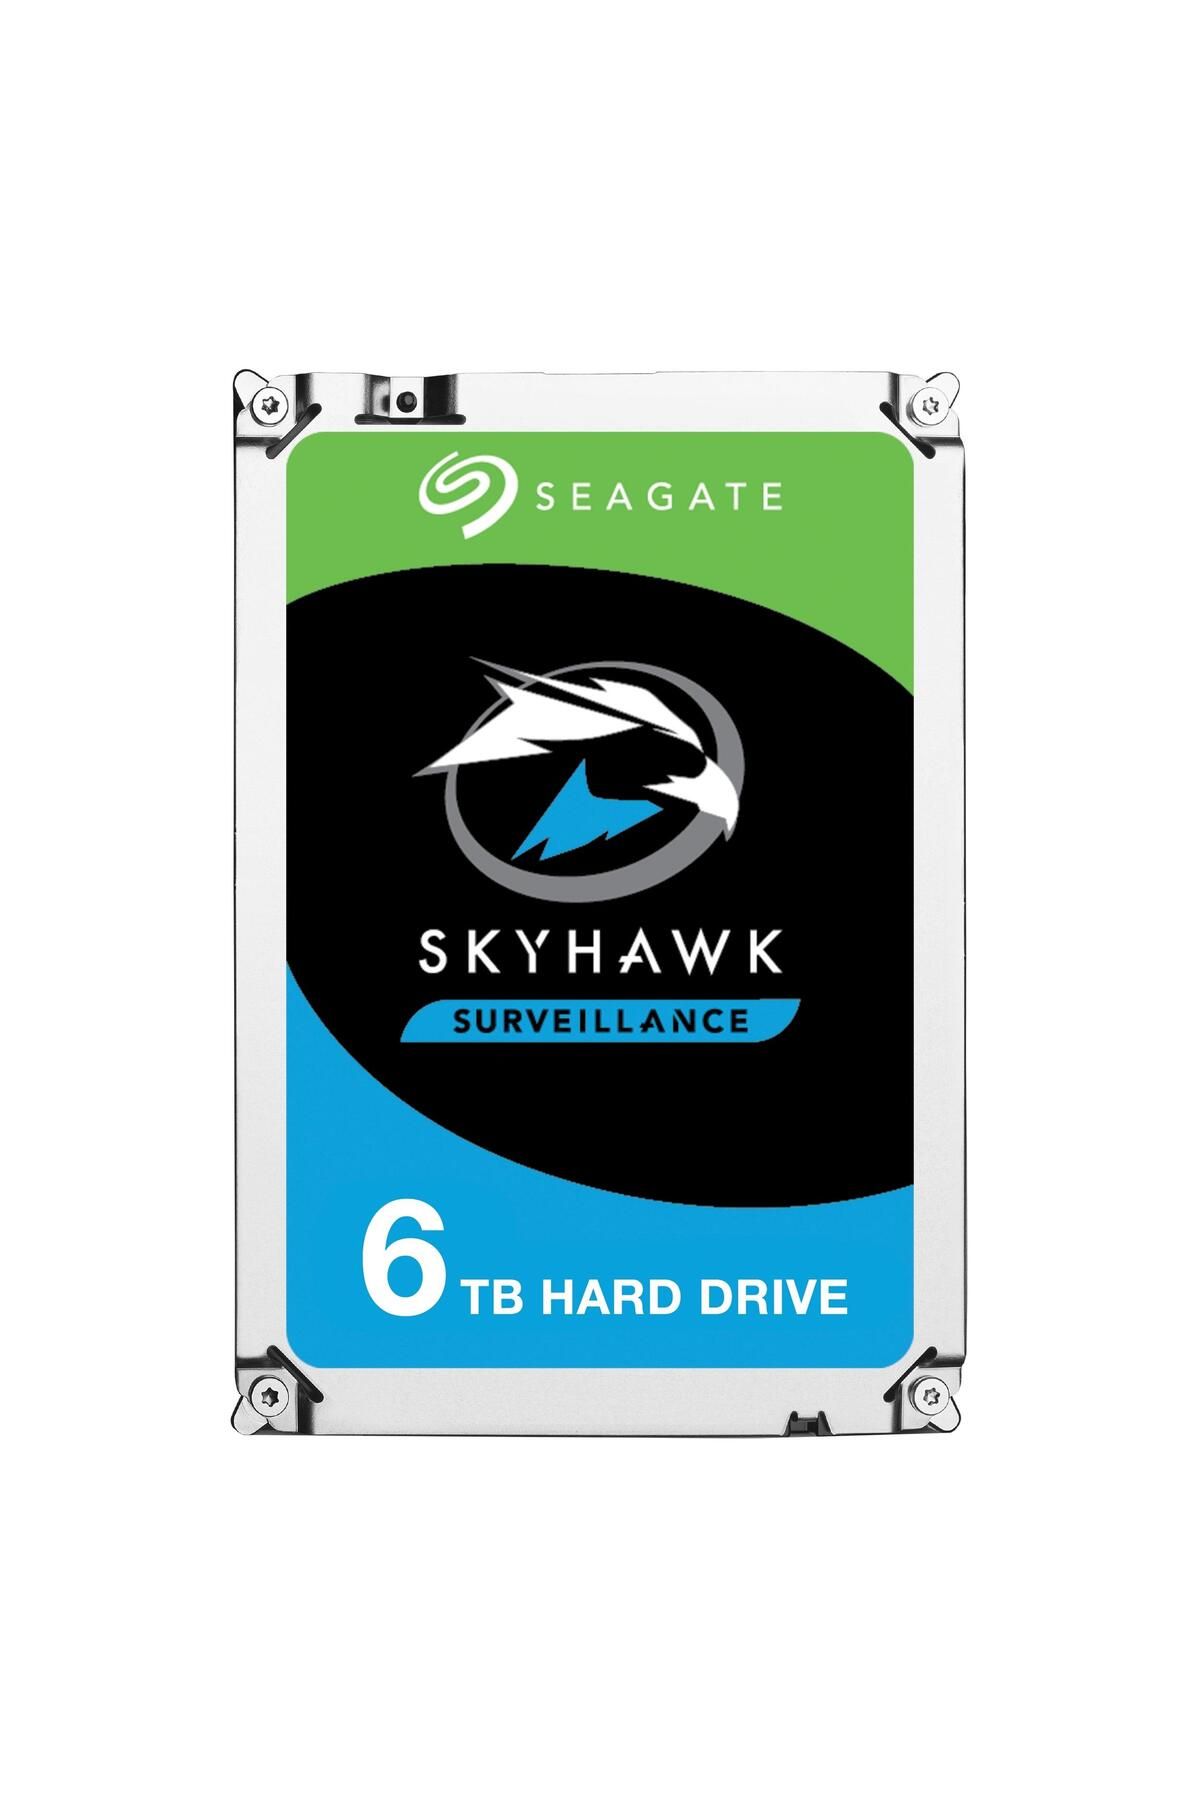 Seagate Skyhawk St6000vx001 6tb 5900rpm 256mb 3.5" Sata Harddisk